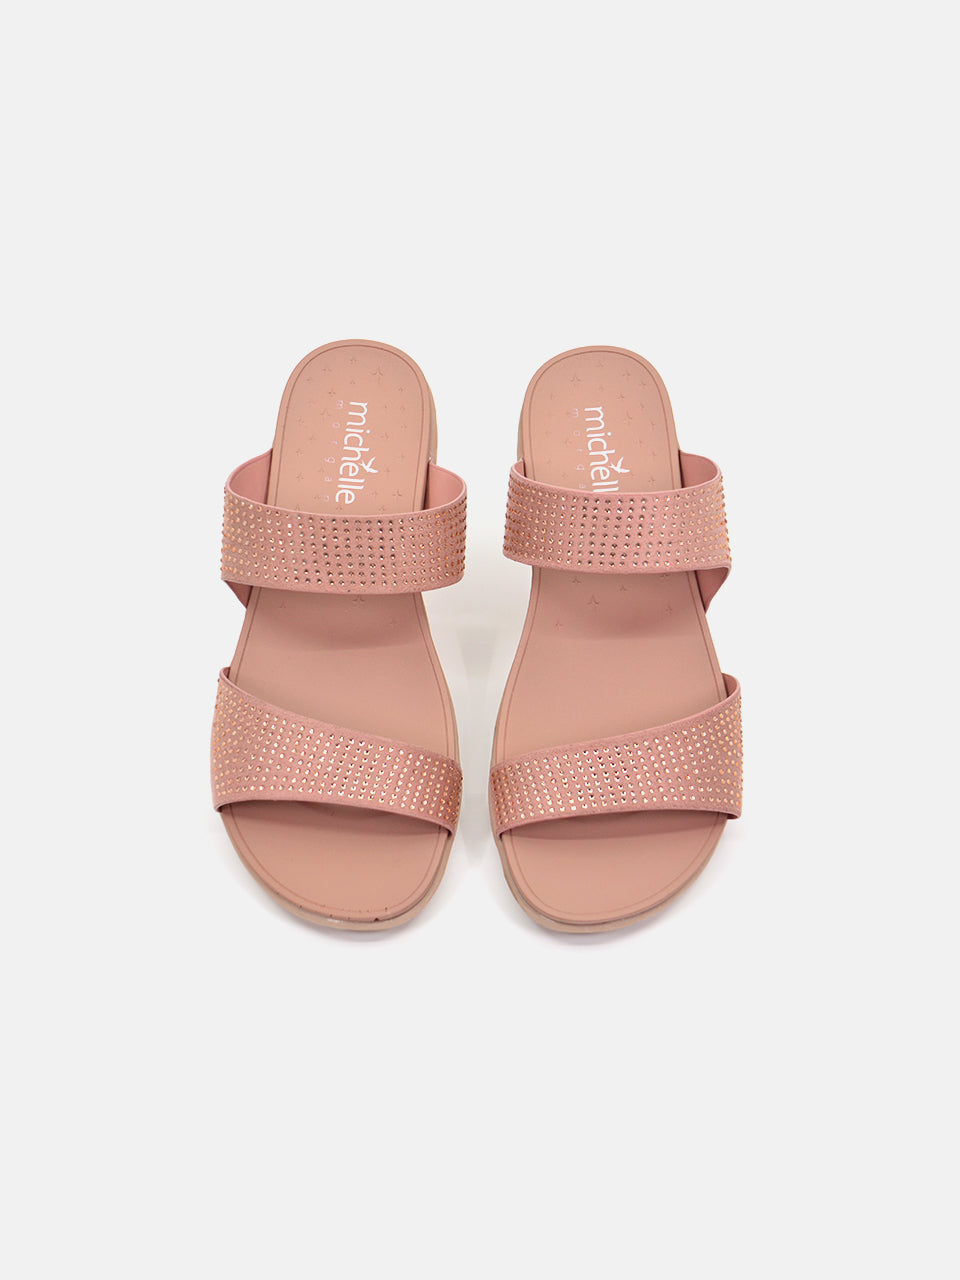 Michelle Morgan 814RJ082 Women's Flat Sandals #color_Pink